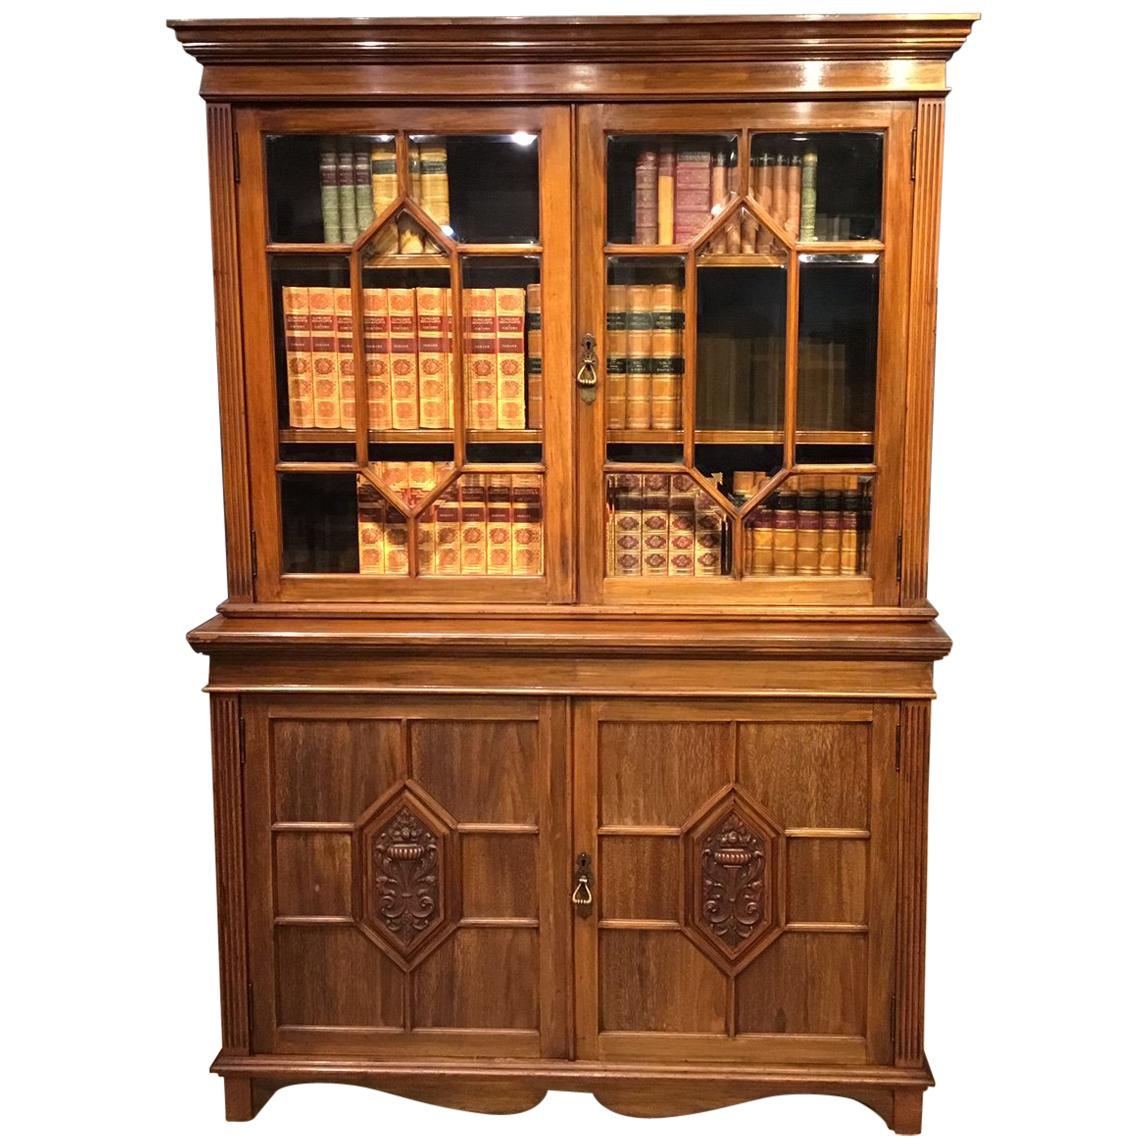 Walnut Edwardian Bookcase by Maple & Co. of London